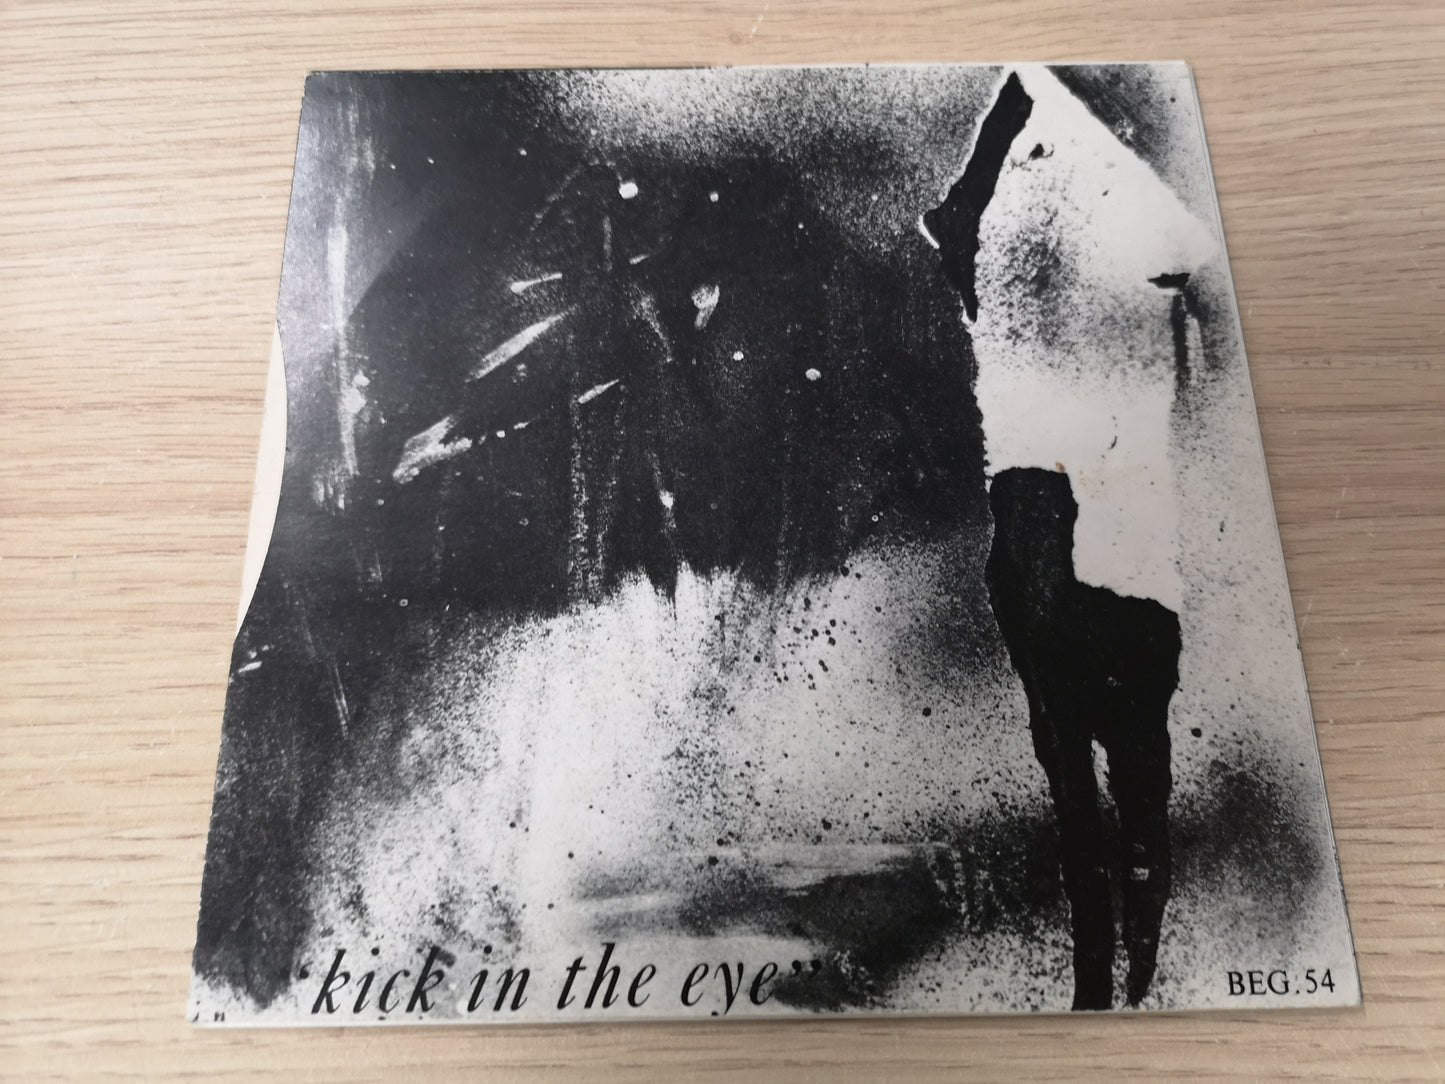 Bauhaus "Kick in the Eye" Orig UK 1981 M-/M- (7" Single)